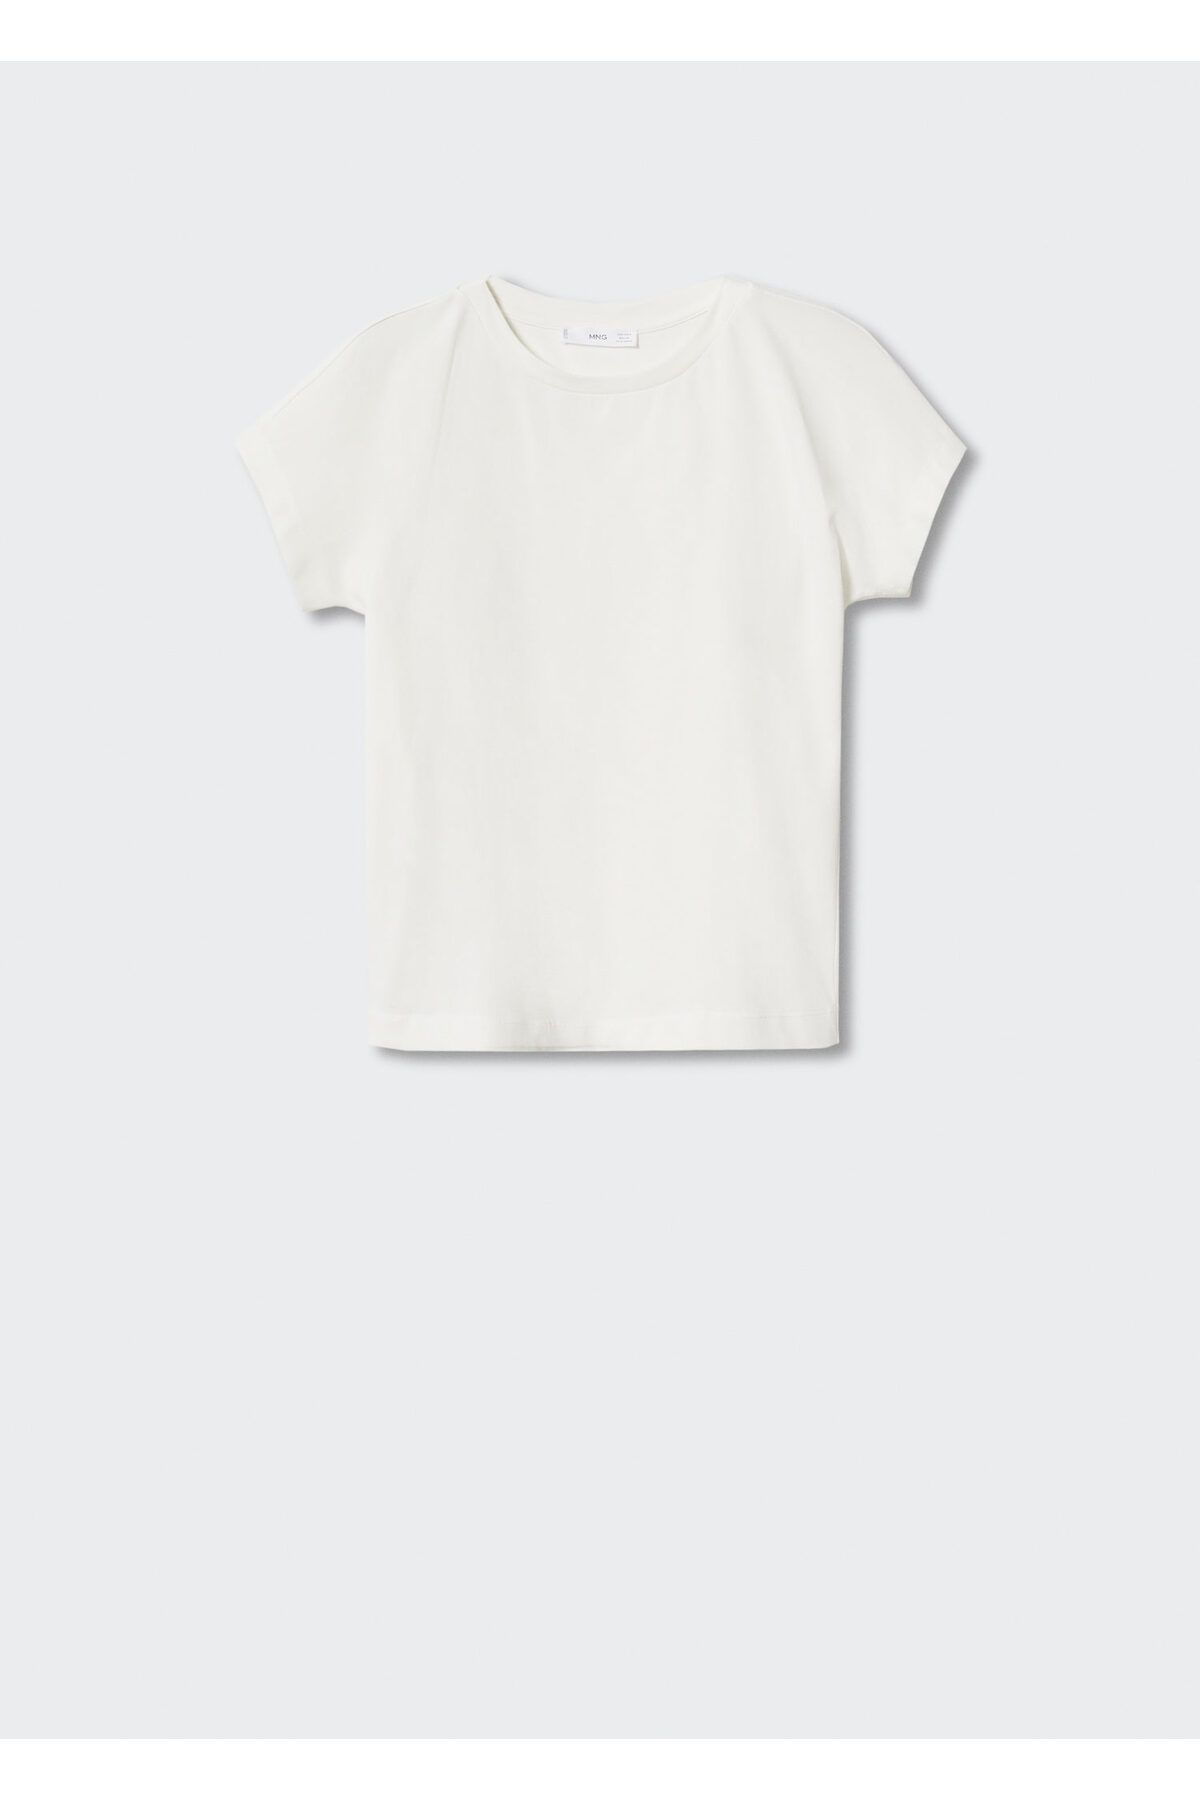 MANGO Kadın Beyaz T-Shirt 17084058